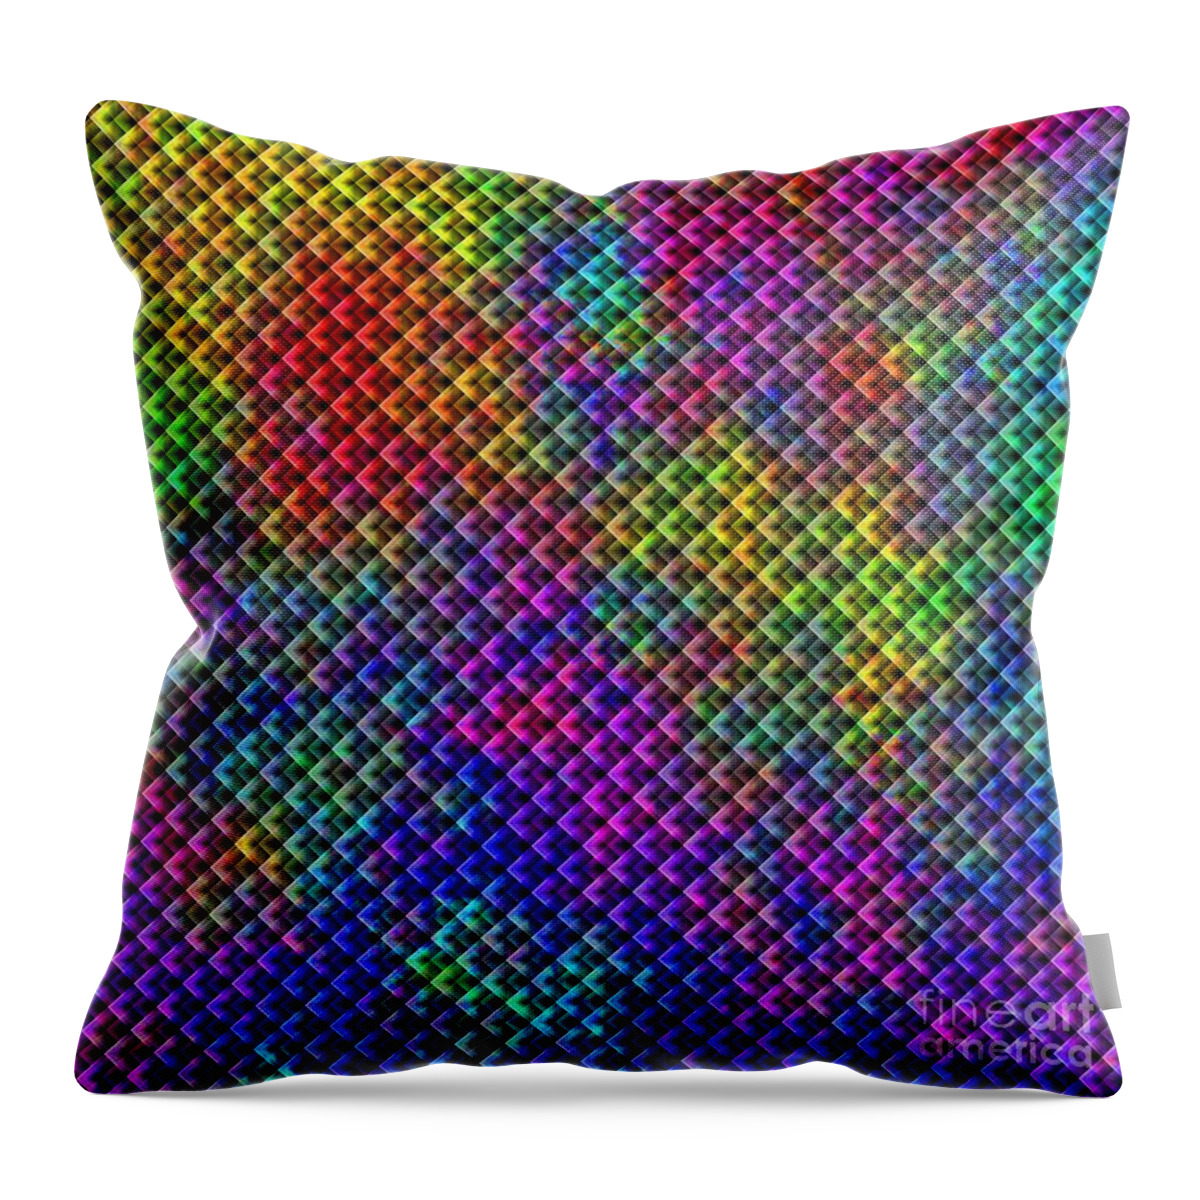 Kaleidoscope Throw Pillow featuring the digital art Kaleidoscope #11 by Henrik Lehnerer